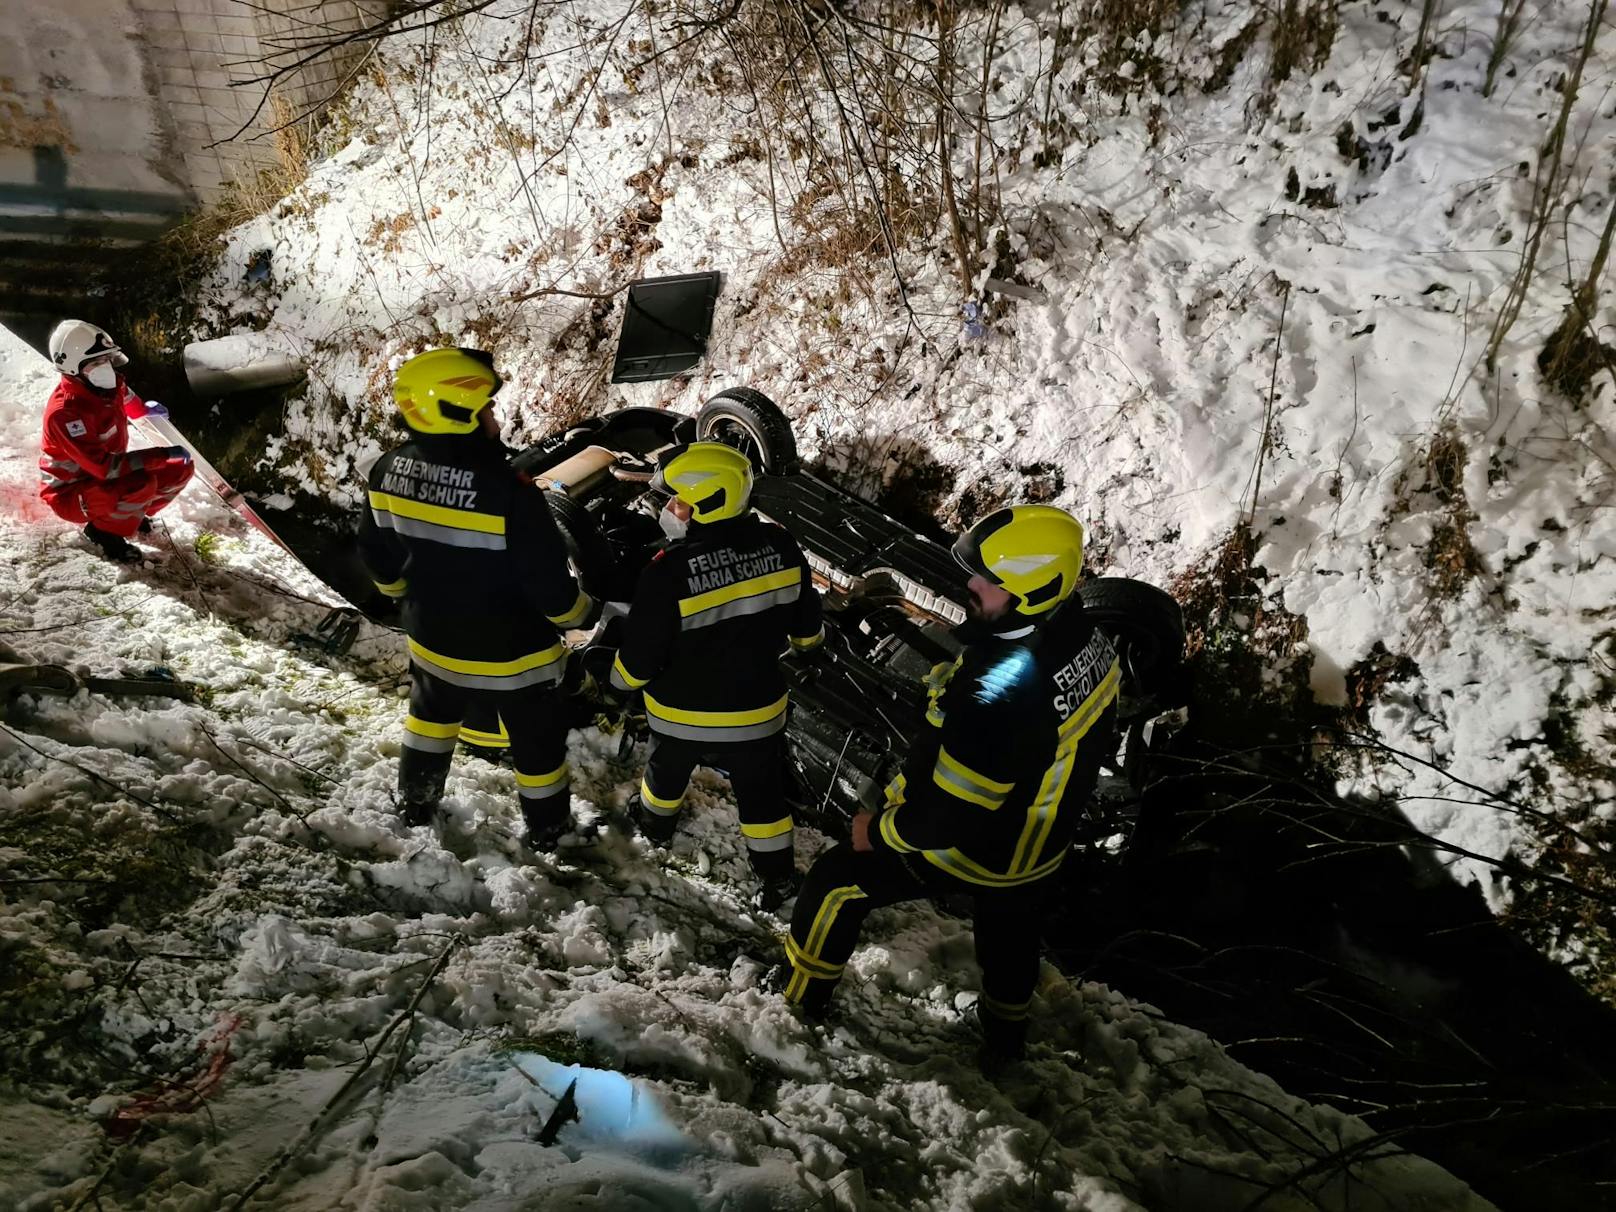 Lenker nach Sturz in Bach in Pkw eingeschlossen: Die Feuerwehr befreite den Mann